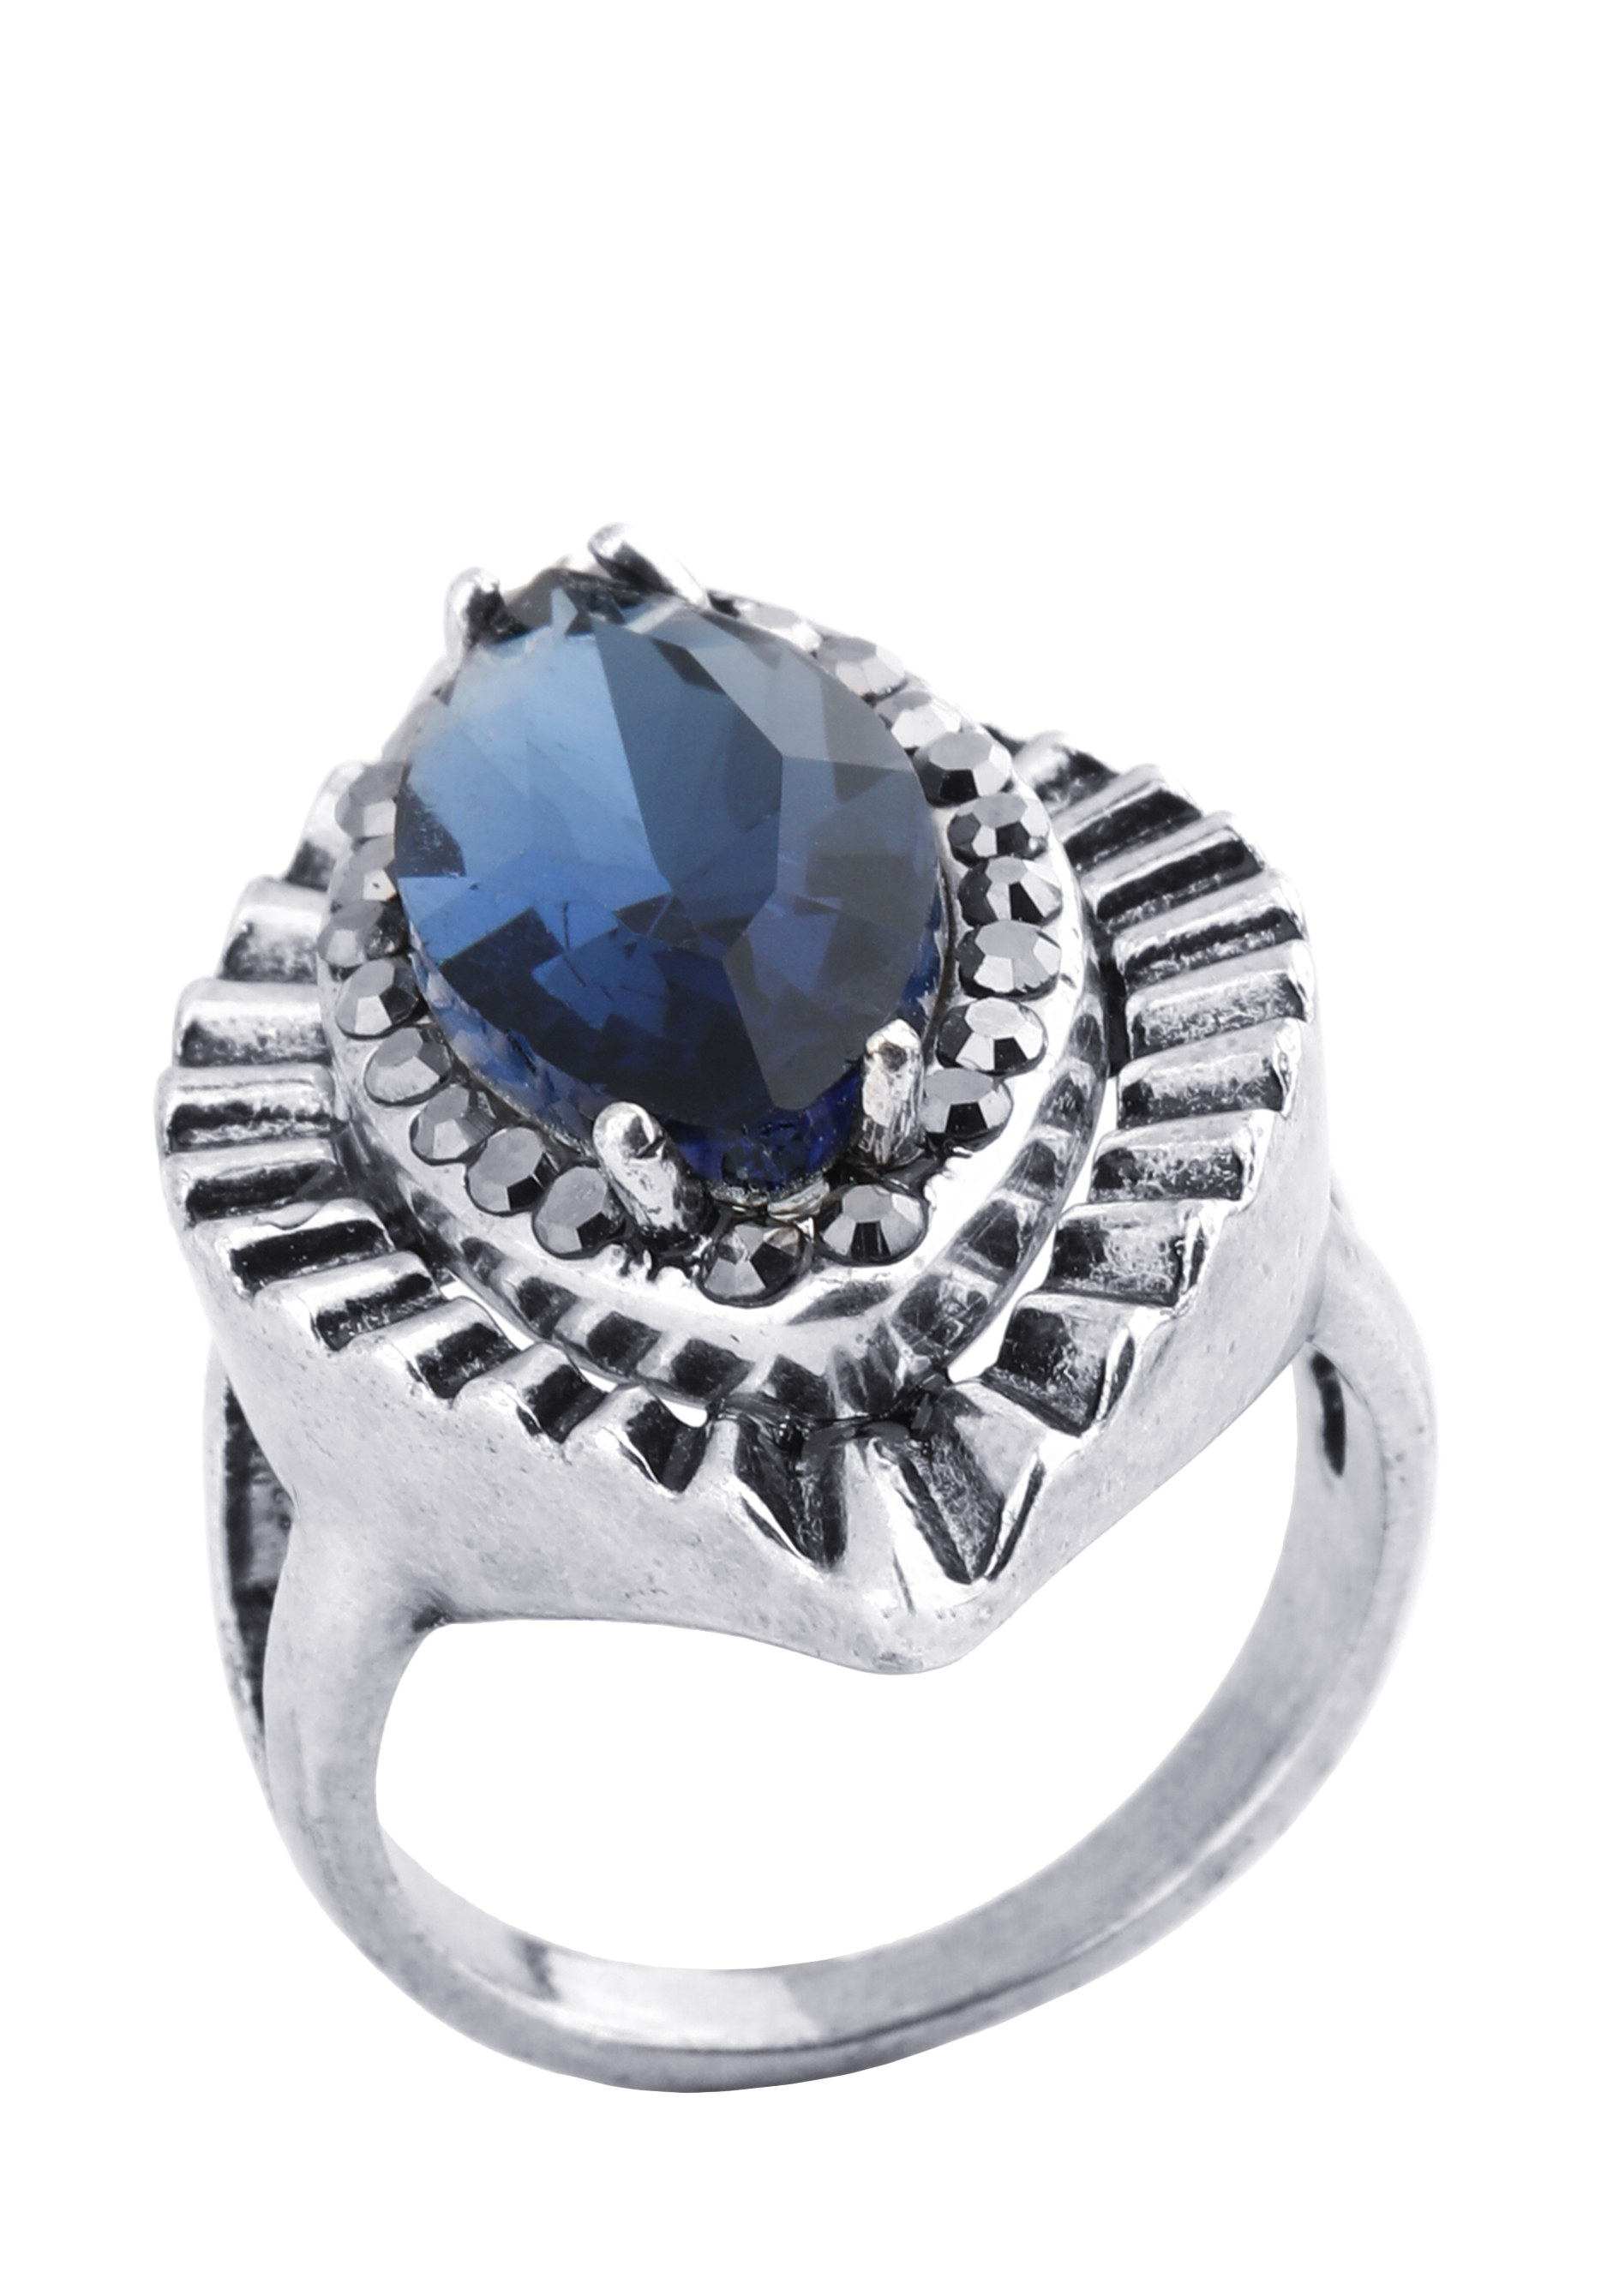 Кольцо «Утренние росы» Доминика Росси, размер 18, цвет синий перстень - фото 1